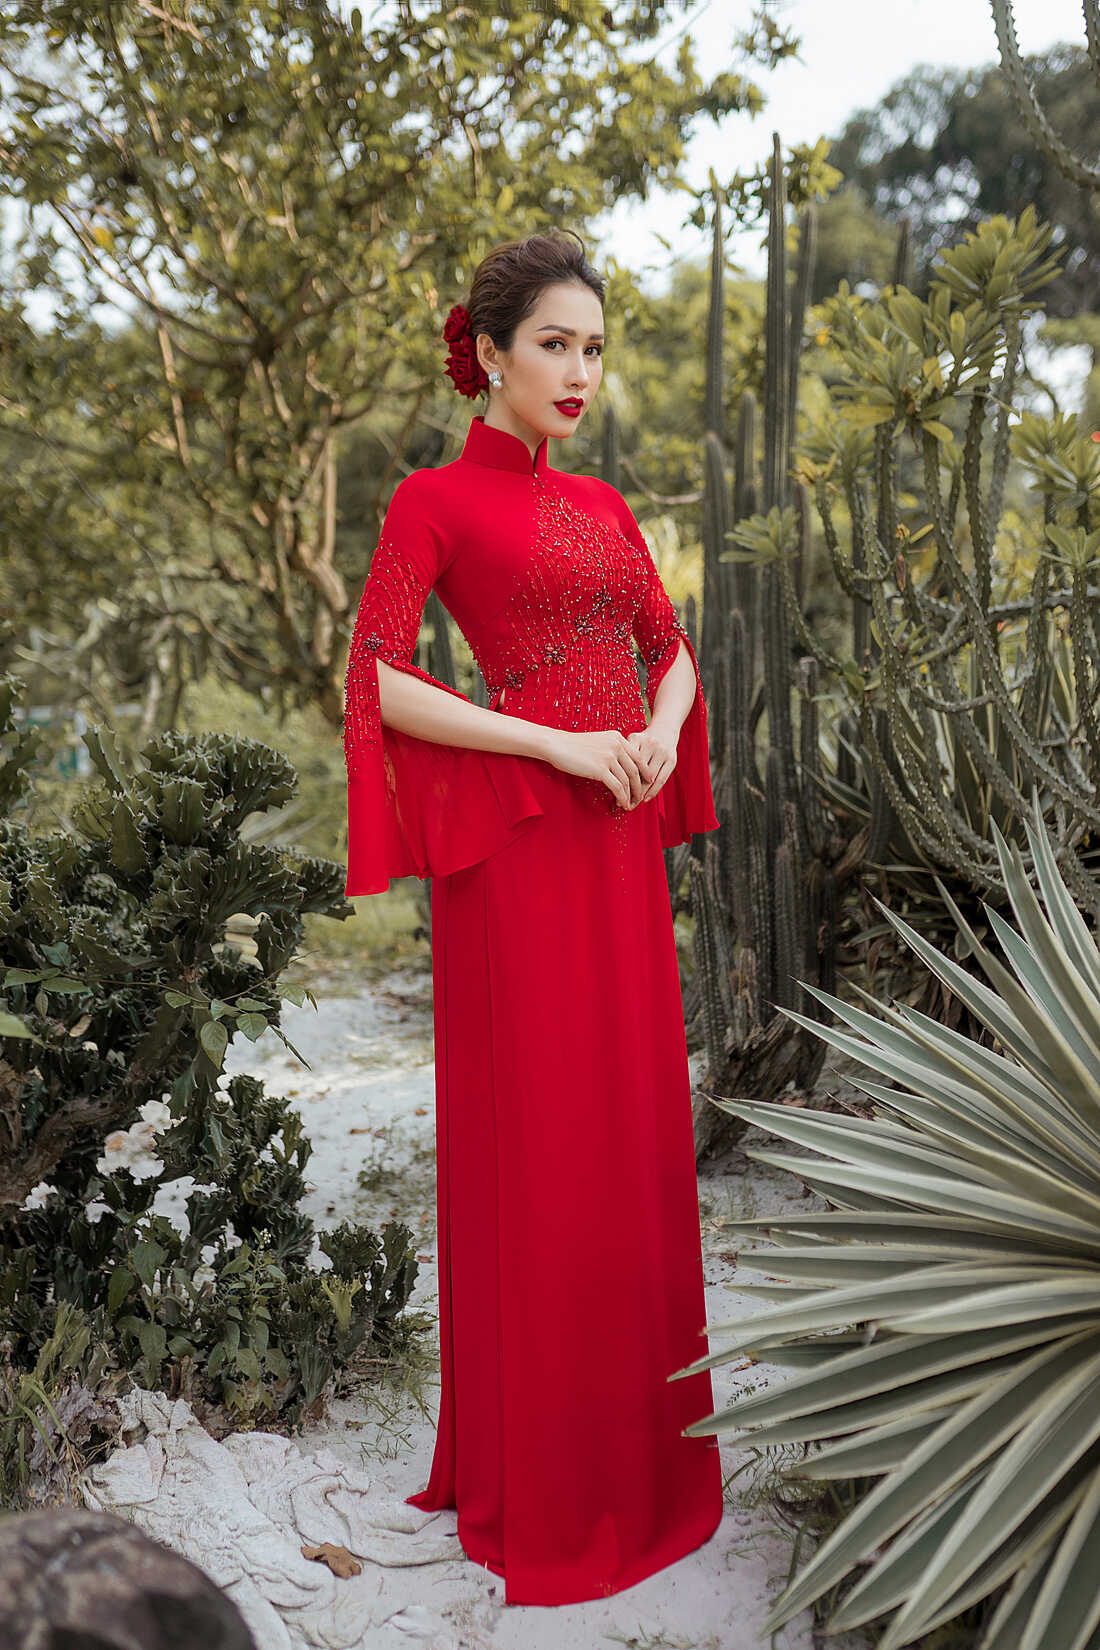 Mẫu áo dài cưới truyền thống đỏ trơn cho nữ